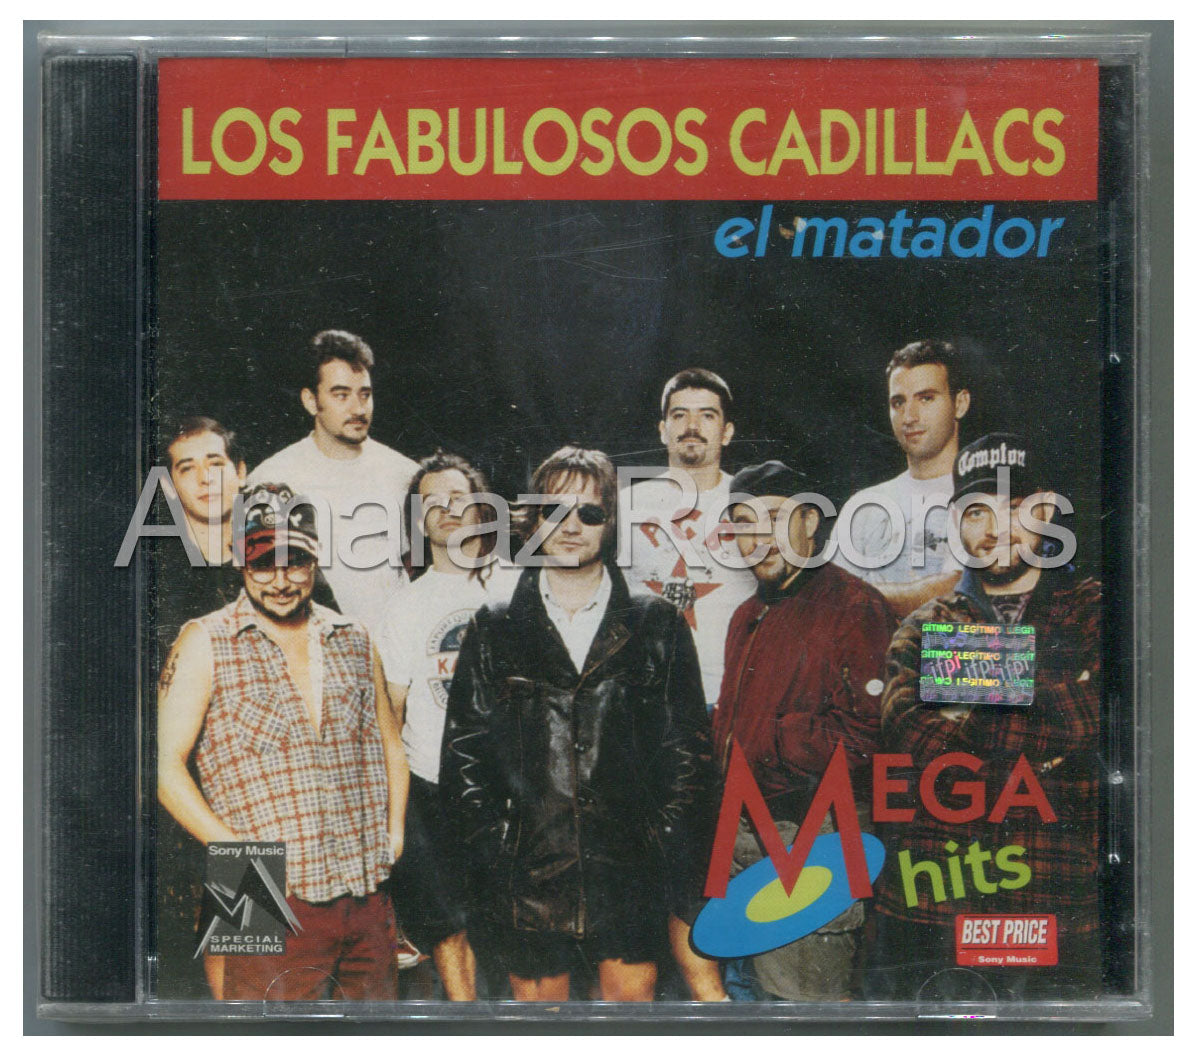 Los Fabulosos Cadillacs El Matador Mega Hits CD [Importado]